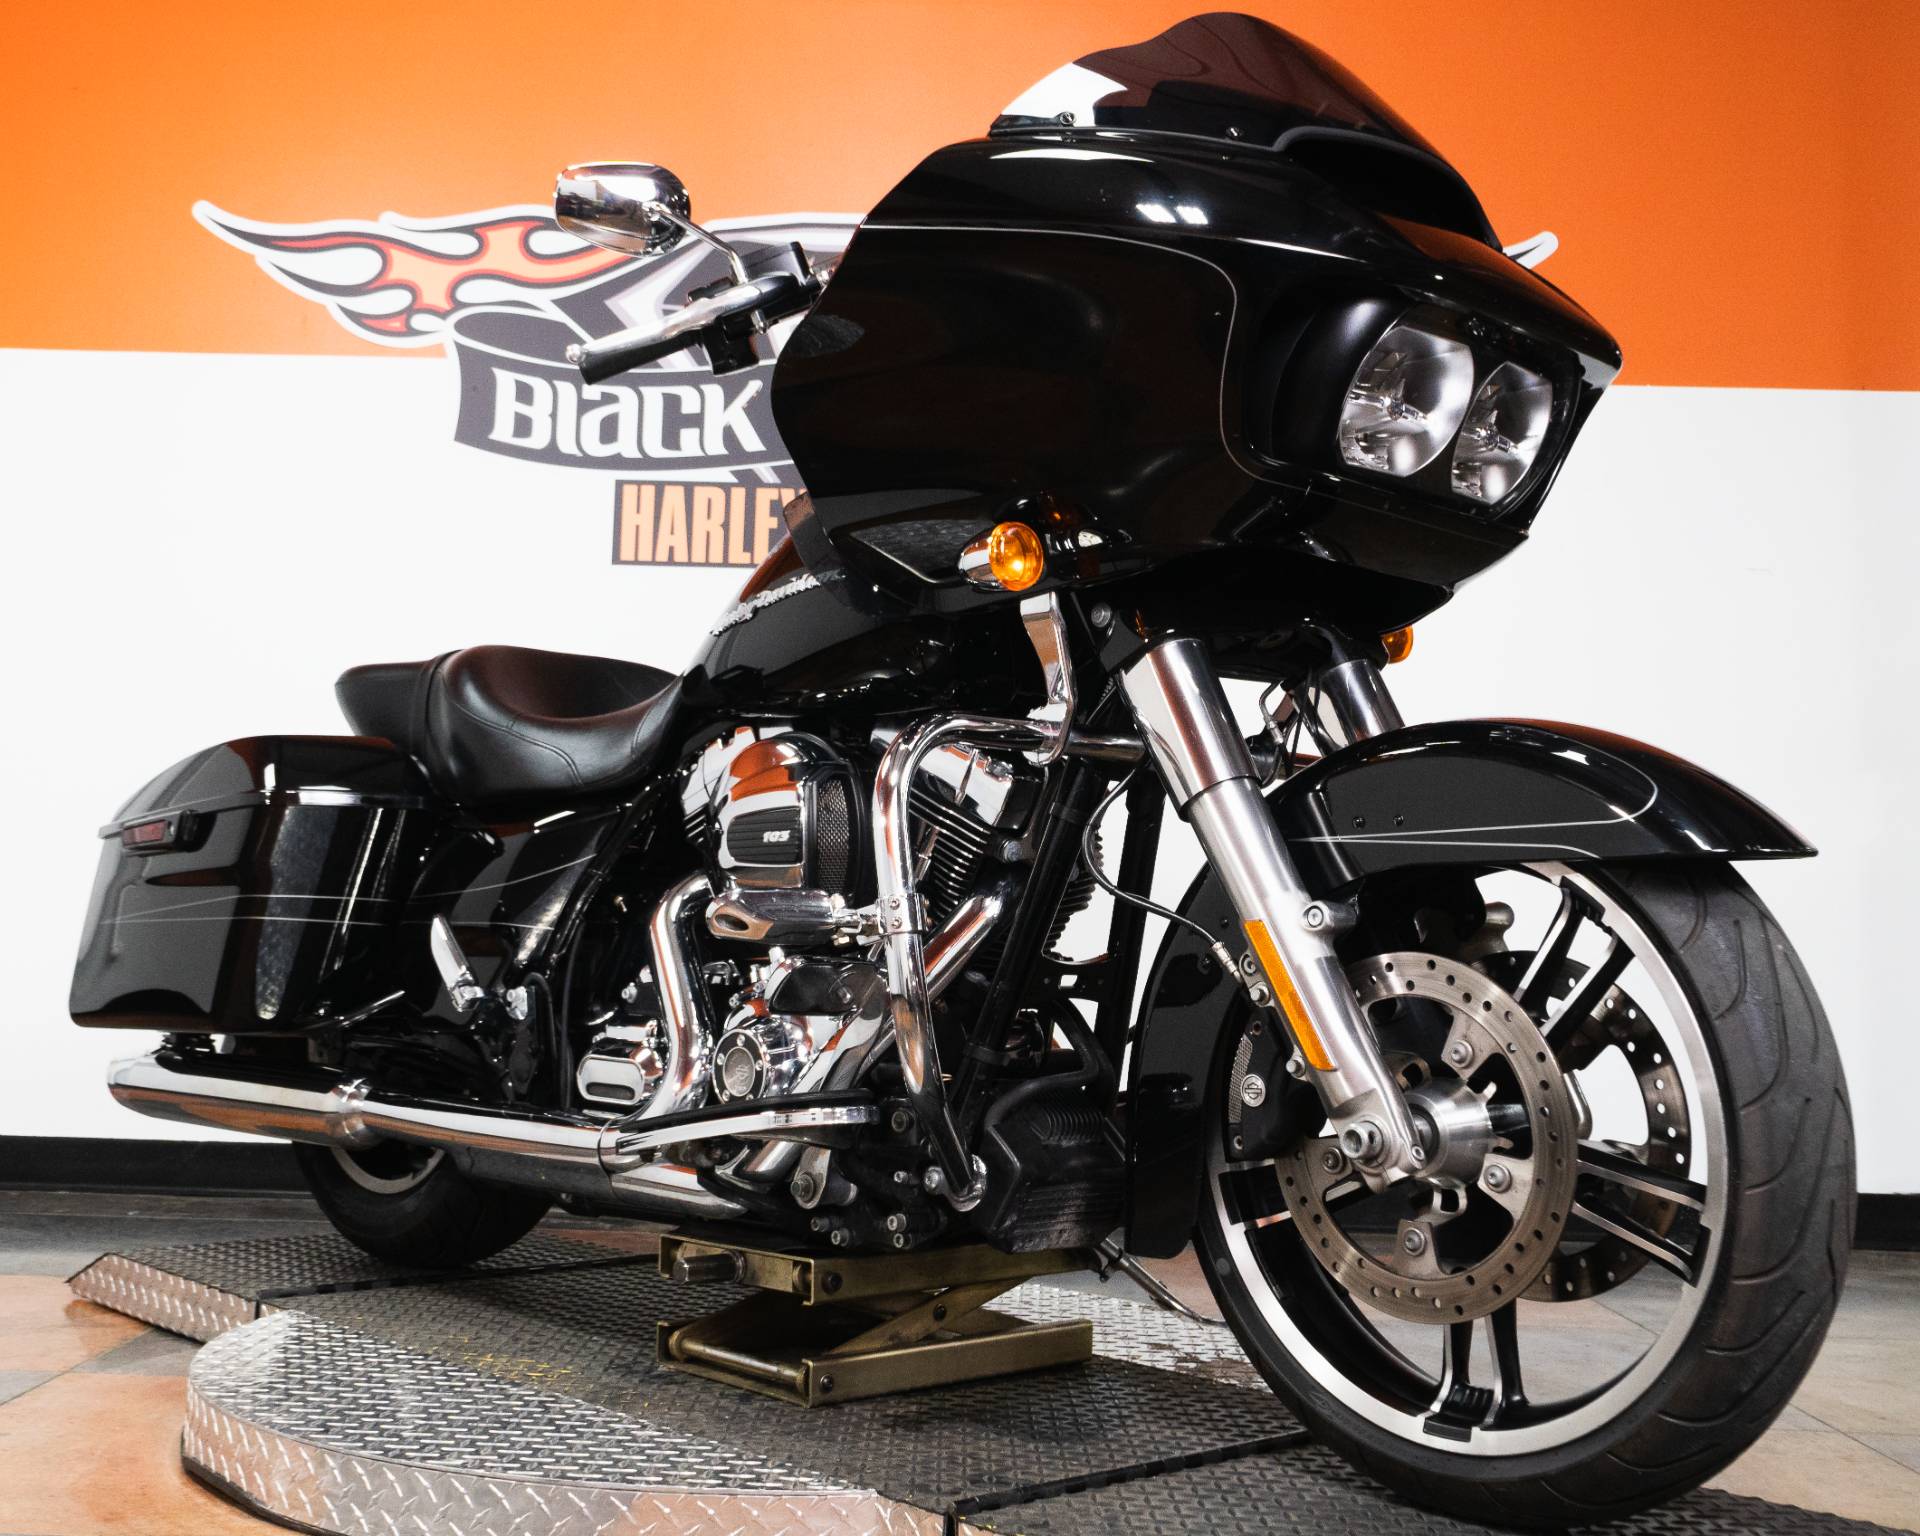 New 2021 Harley Davidson Road Glide Limited Black Fltrk Touring In Riverside 21fltrkgryb Riverside Harley Davidson